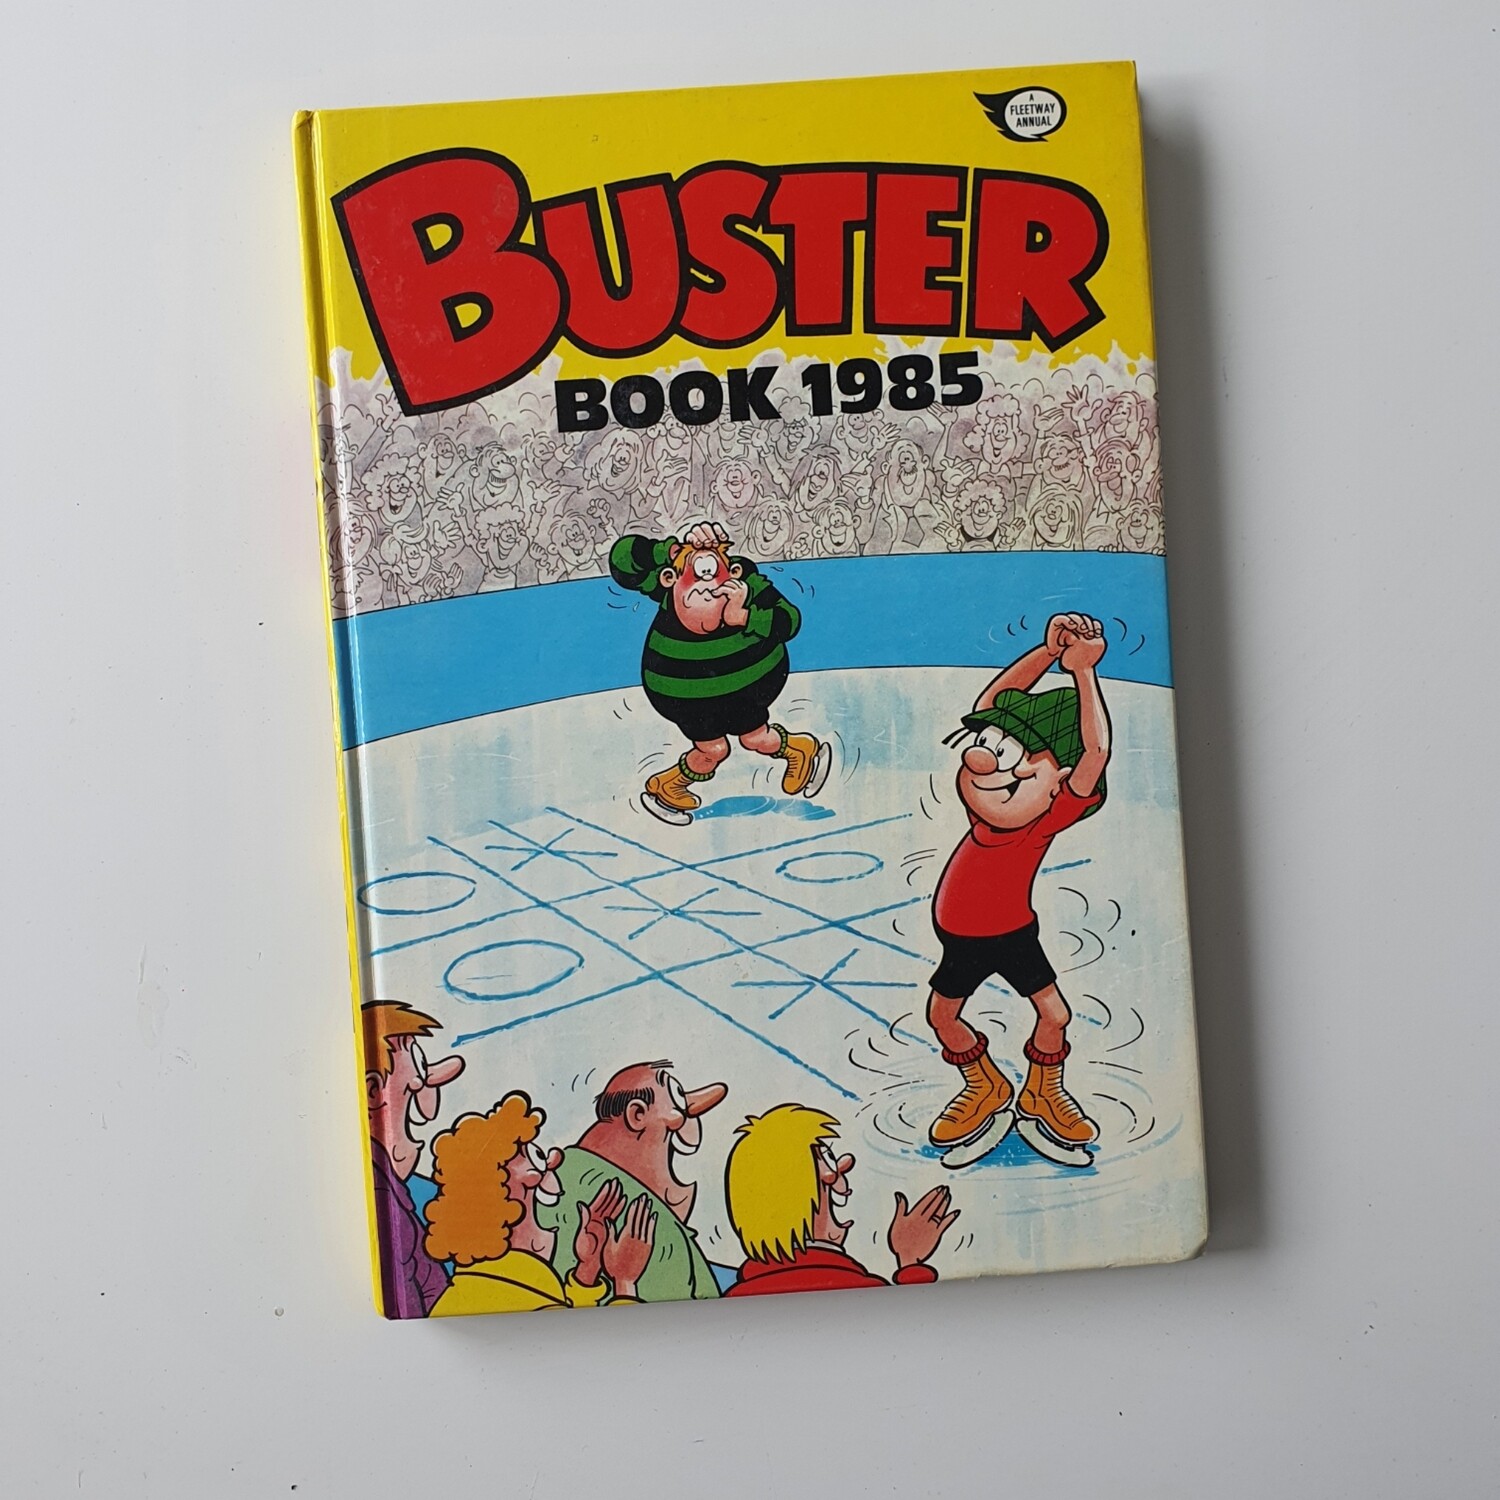 Buster Book 1985 / Monster Munch